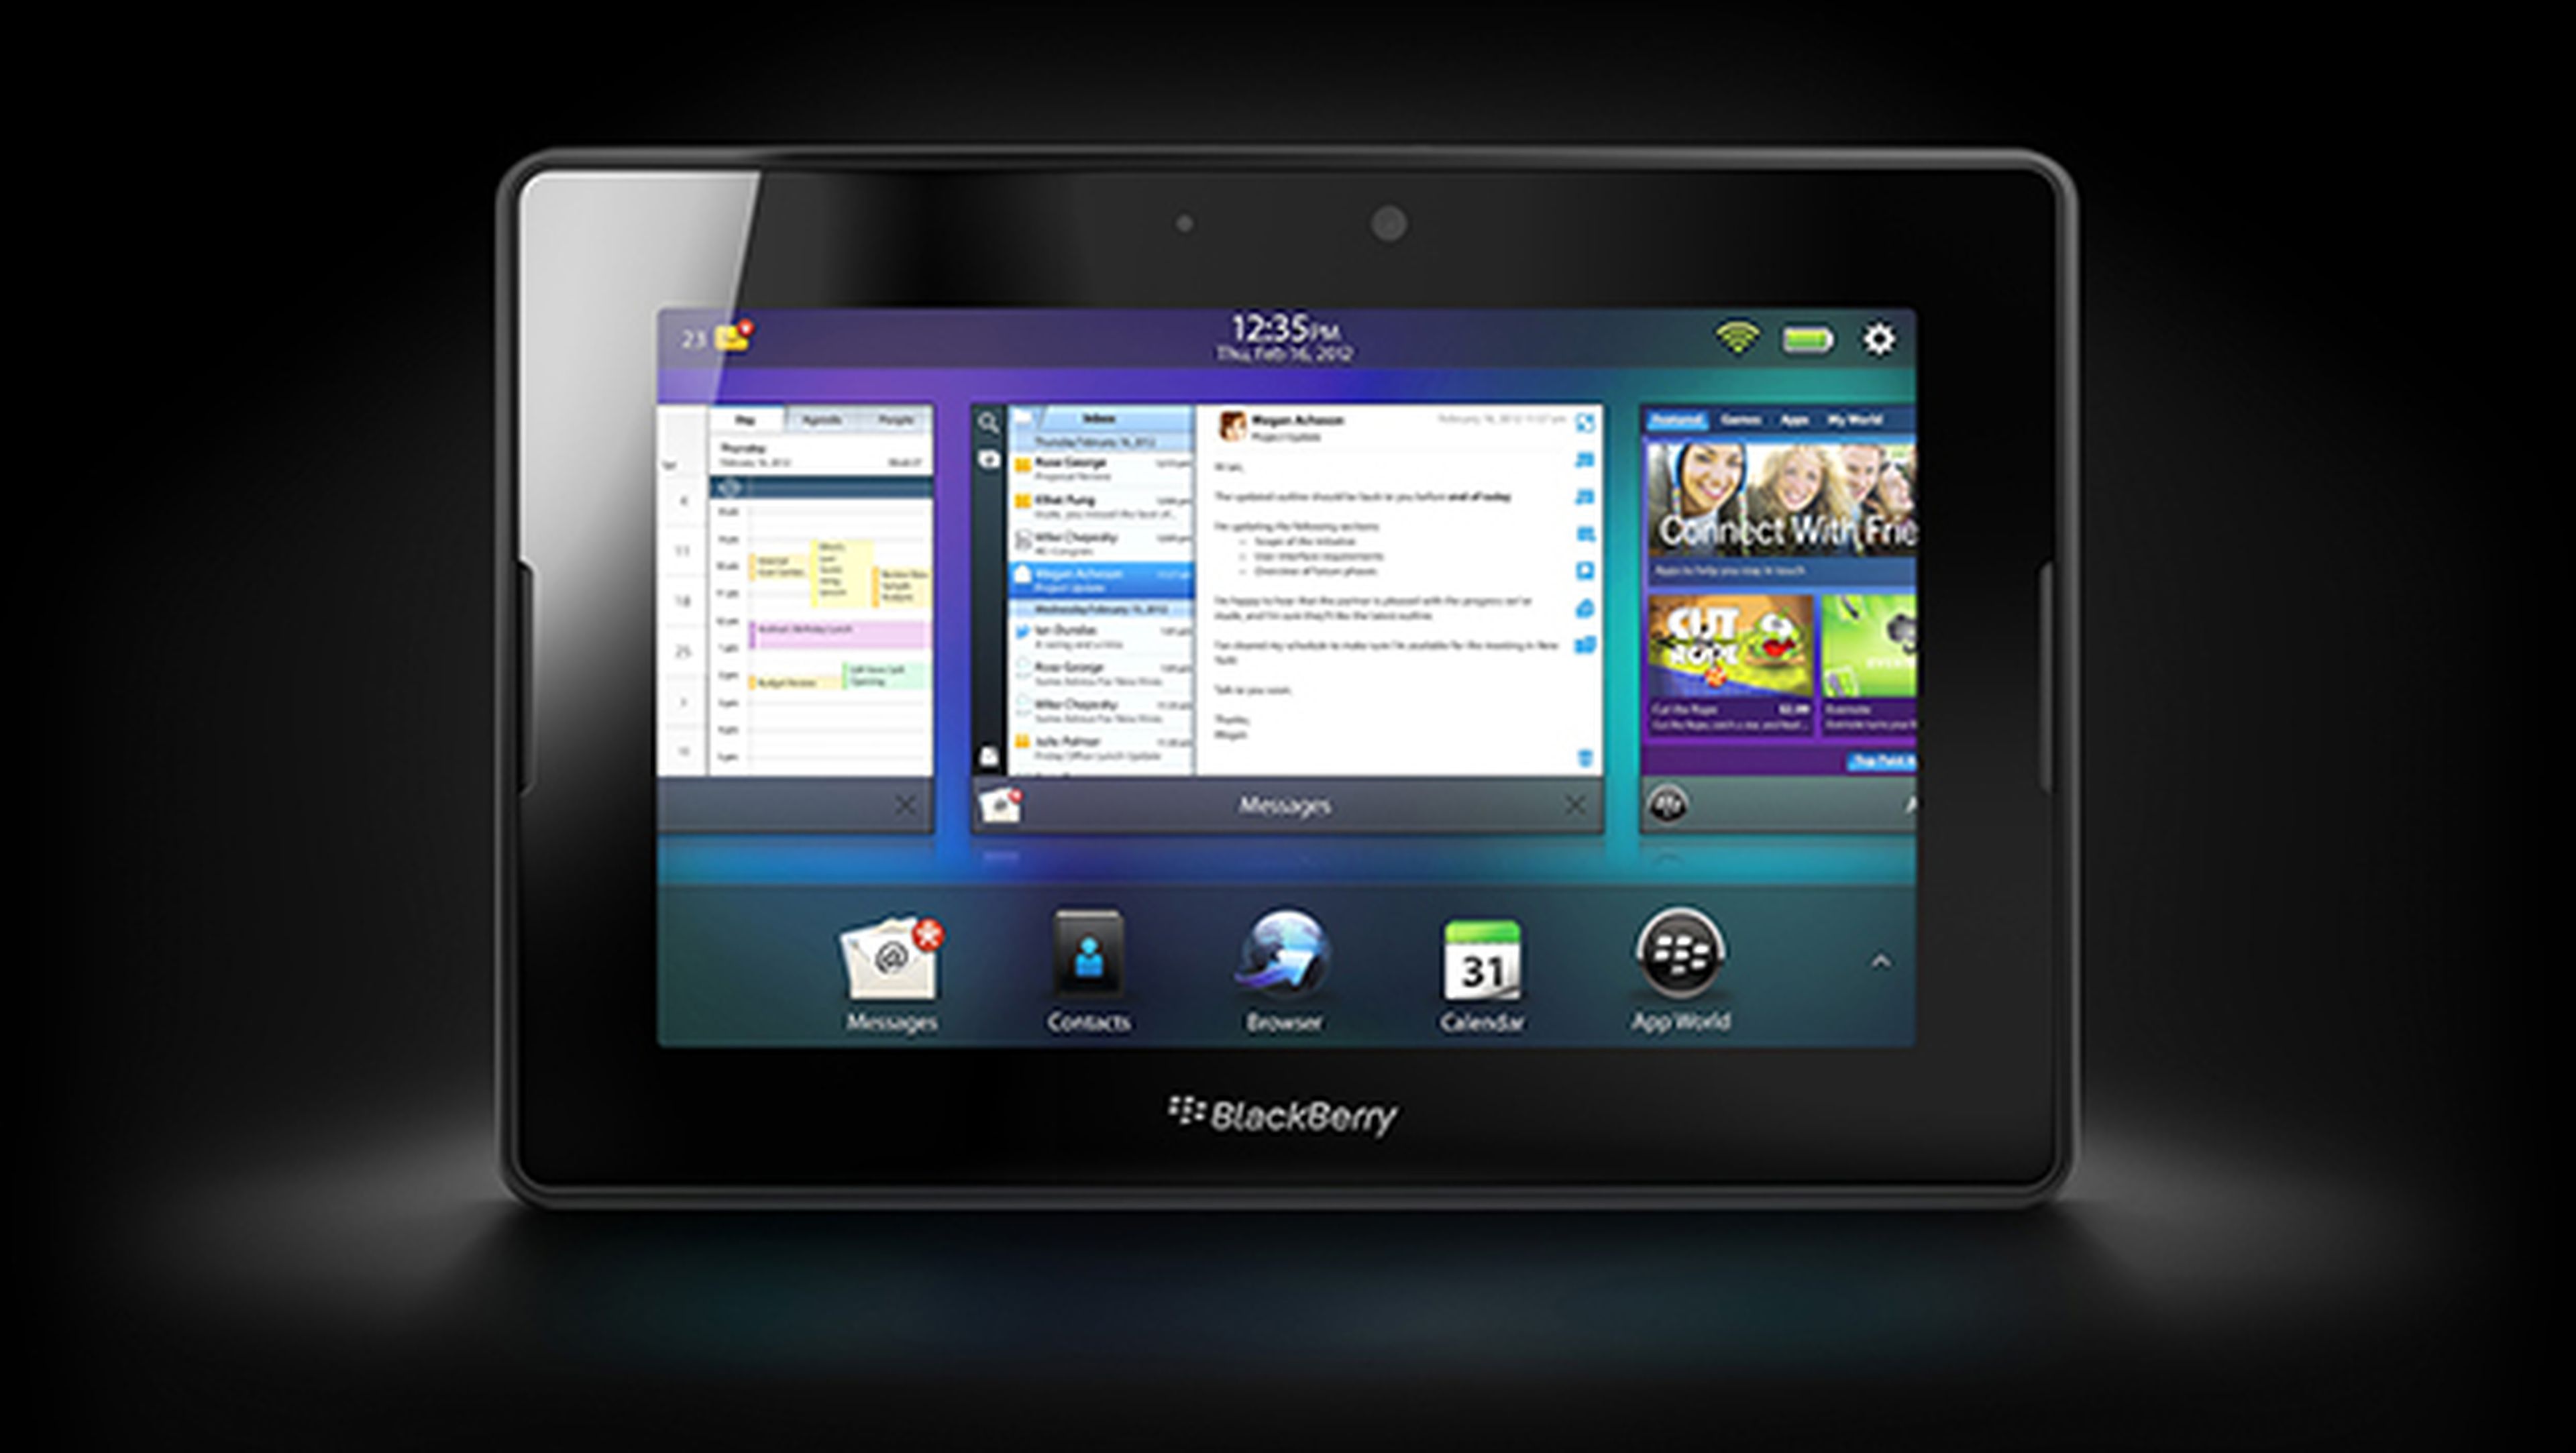 Pronto podríamos ver una tablet de Blackberry en el mercado